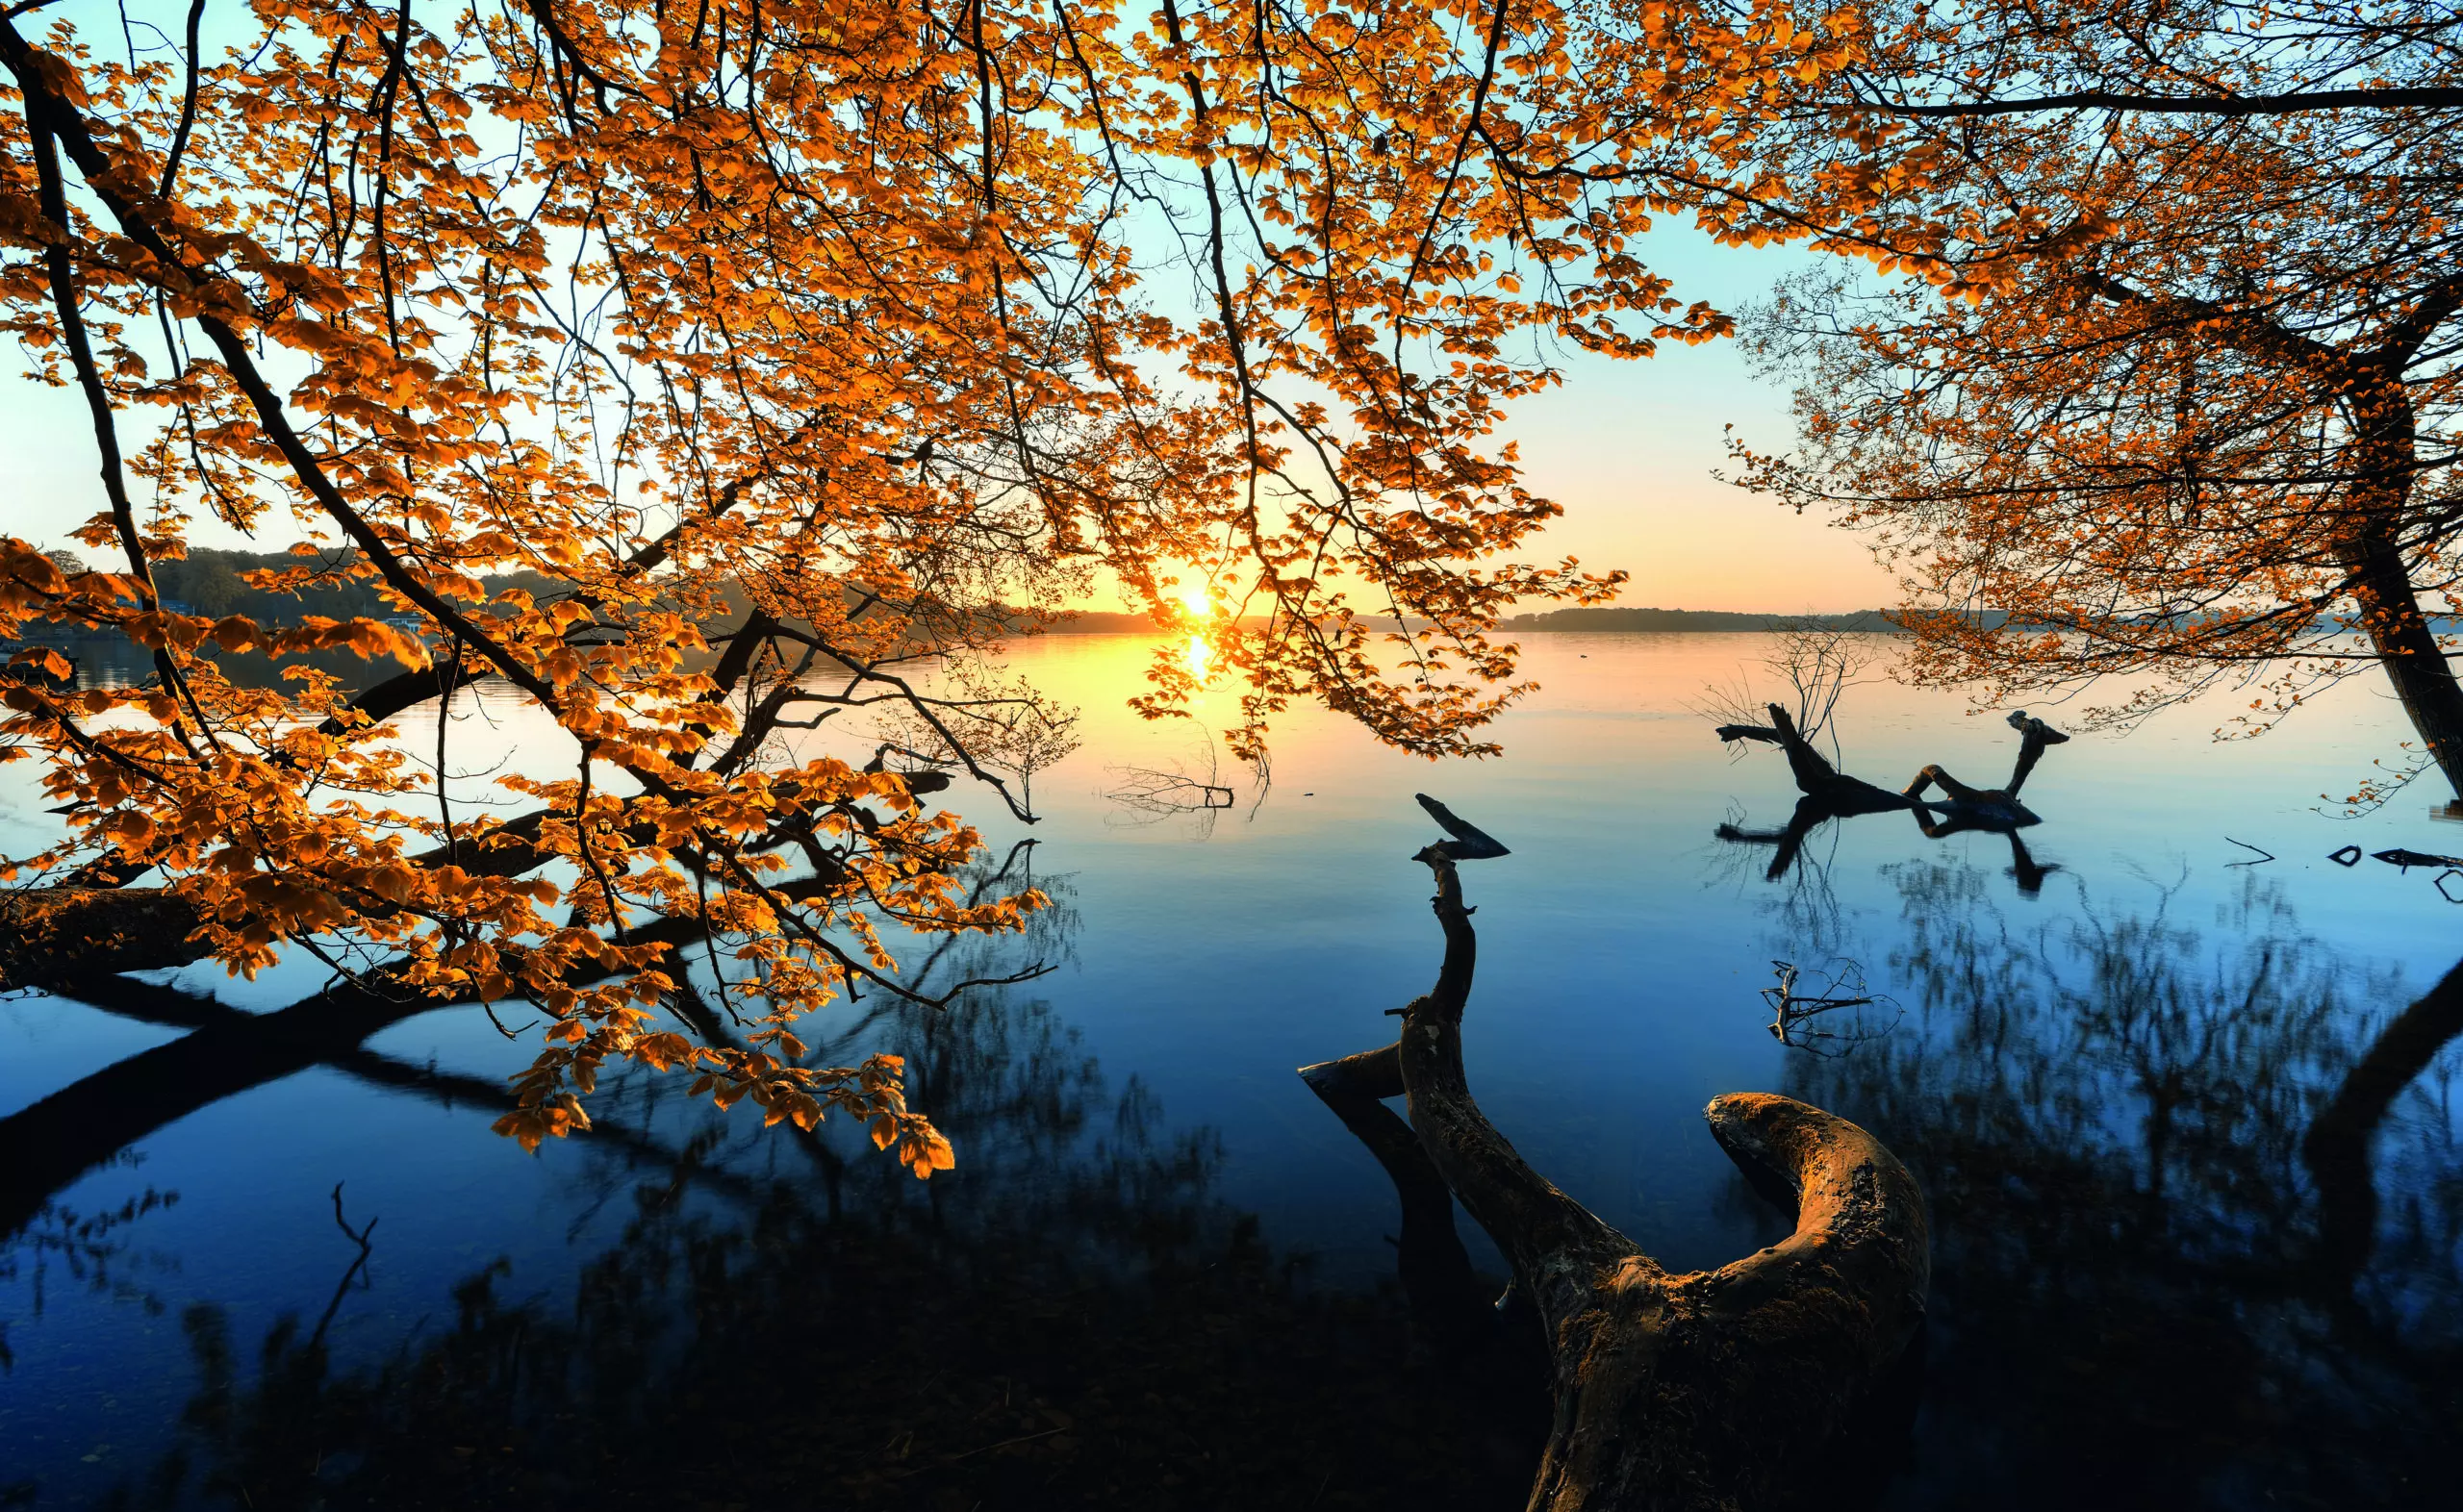 Wandbild (5865) Autumn Morning by keller,1x.com präsentiert: Wasser,Natur,Landschaften,Bäume,Blätter,Gewässer,Herbst,Seen,Wasserspiegelungen